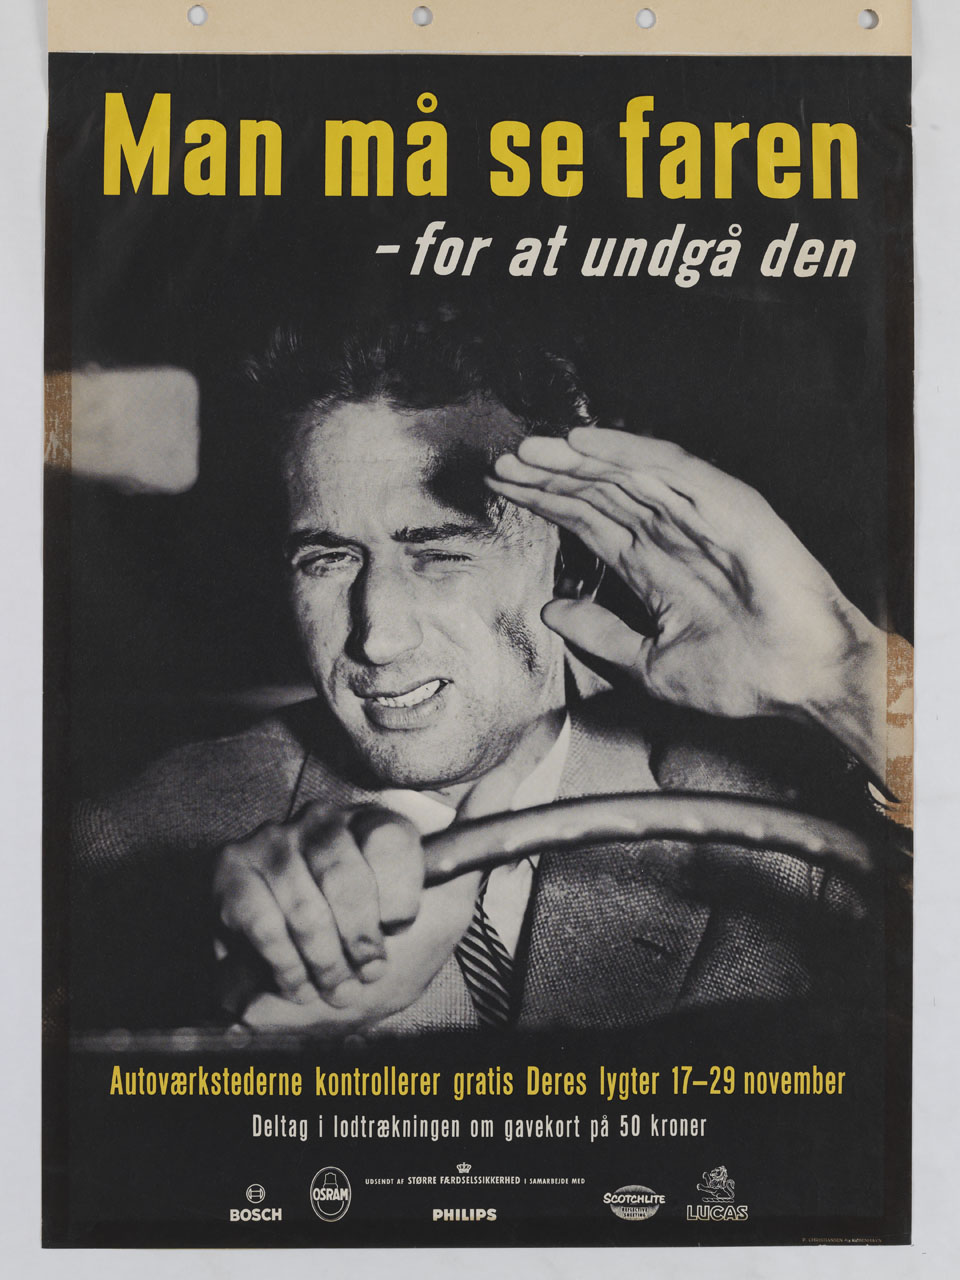 automobilista si copre gli occhi dai fari di una macchina per evitare un incidente (manifesto) - ambito danese (sec. XX)